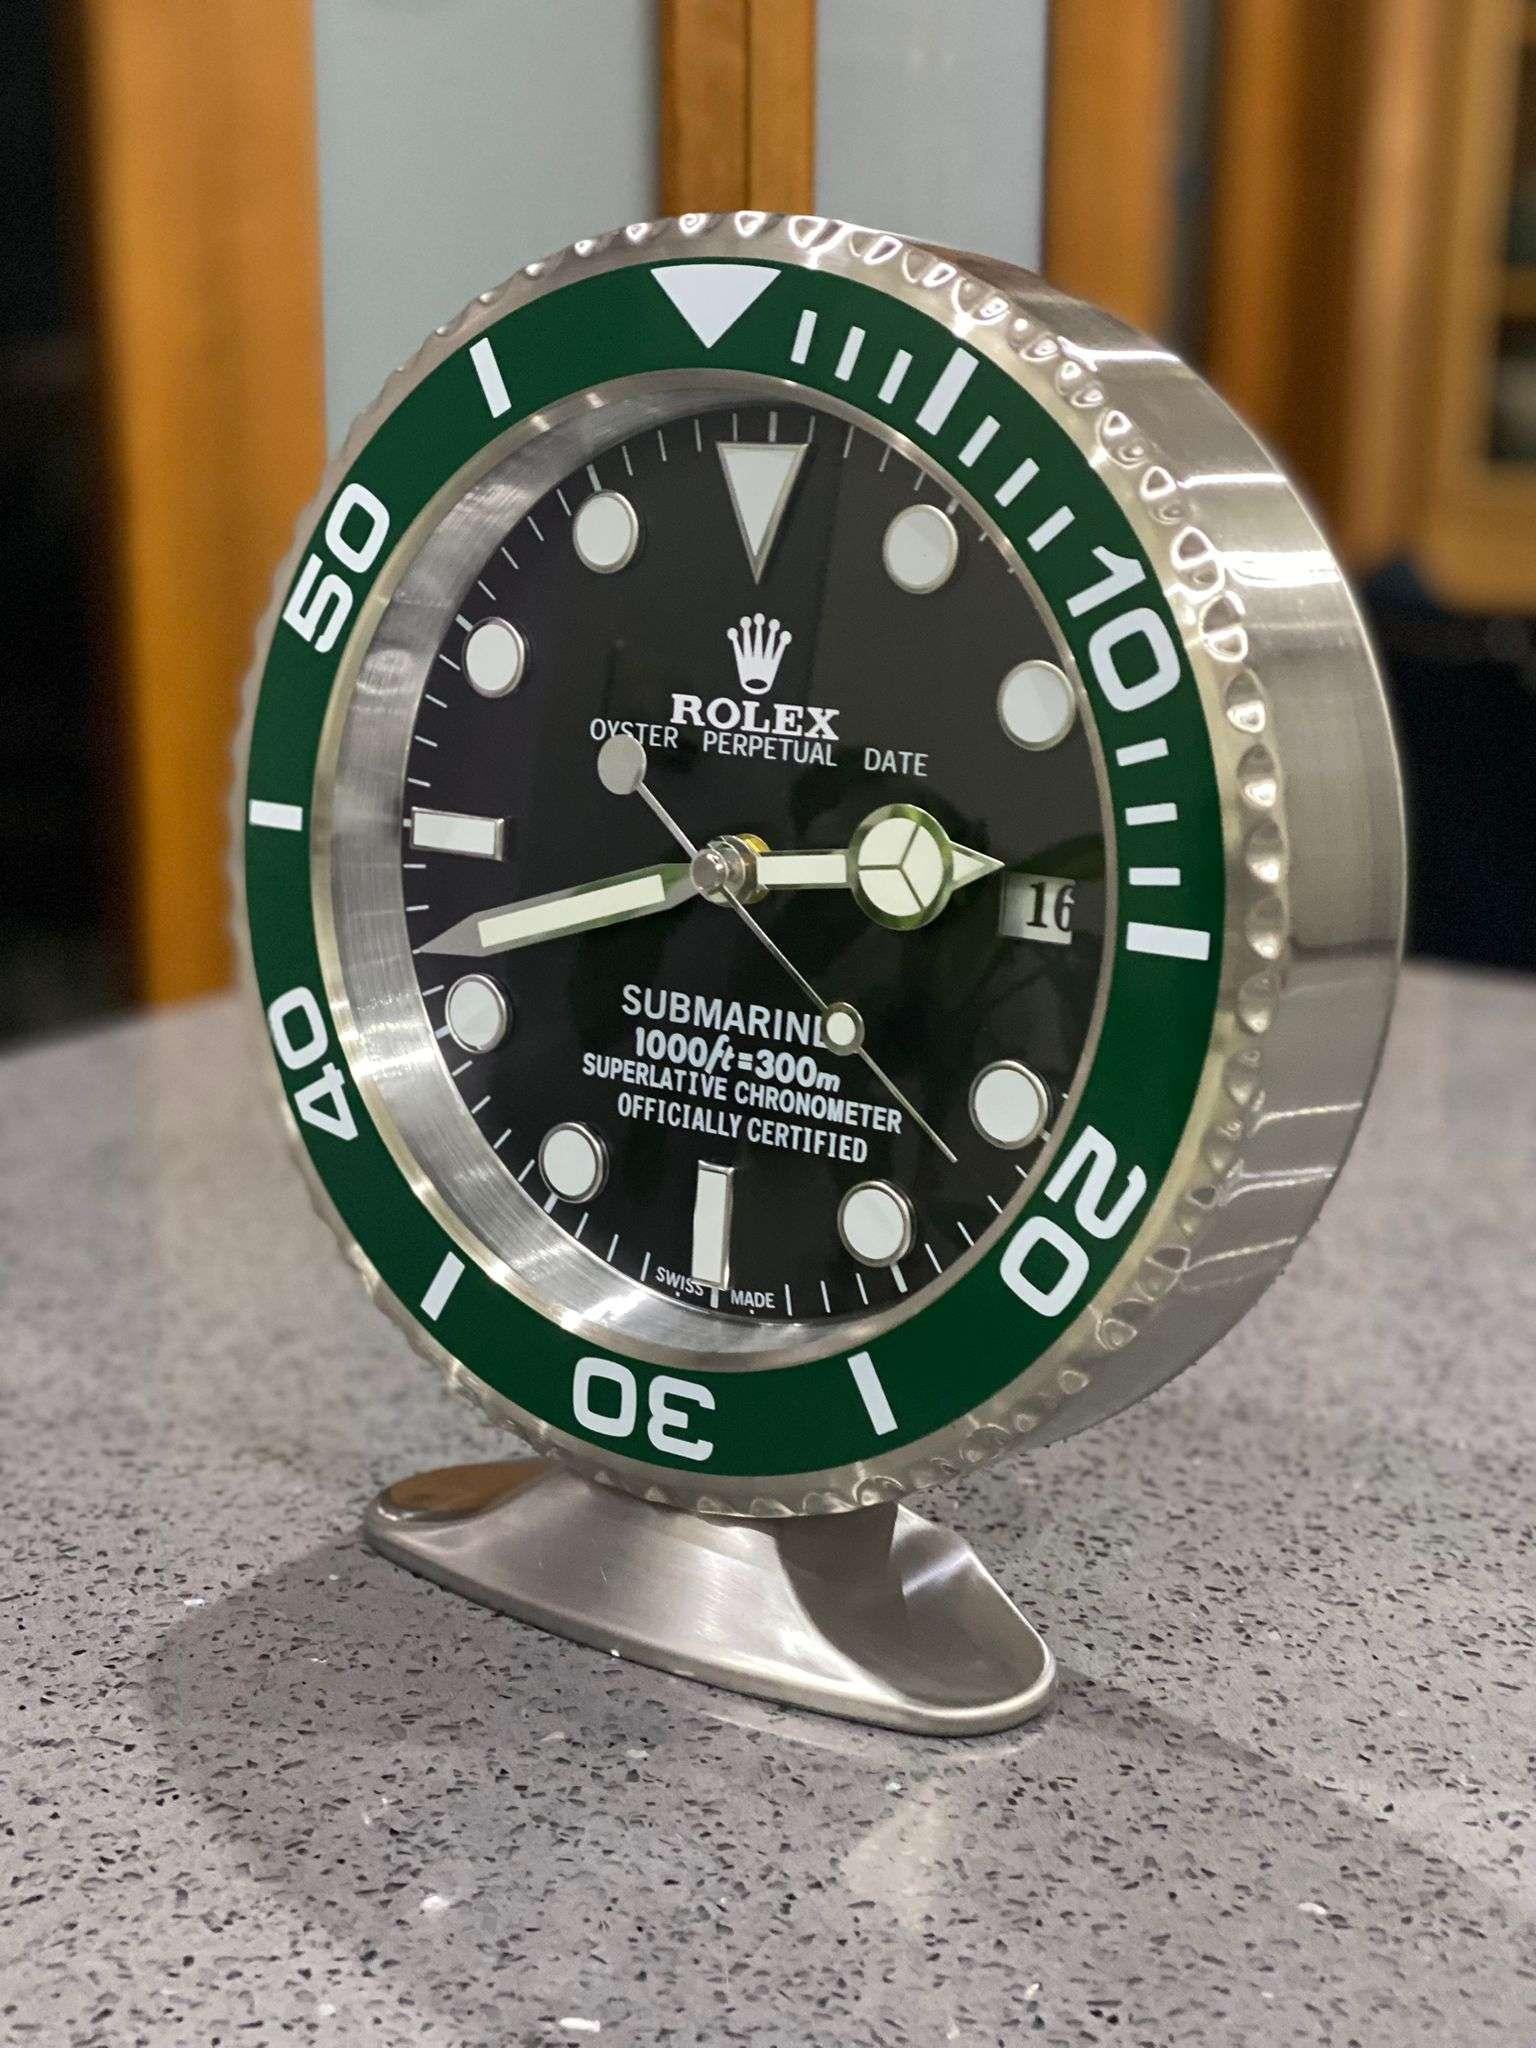 Horloge de bureau Oyster Perpetual Green Hulk Submariner officiellement certifiée ROLEX 
Mains lumineuses.
Date entièrement fonctionnelle.
Balayage des mains.
Mouvement à quartz.
Bon état, fonctionnement.
Expédition internationale gratuite.